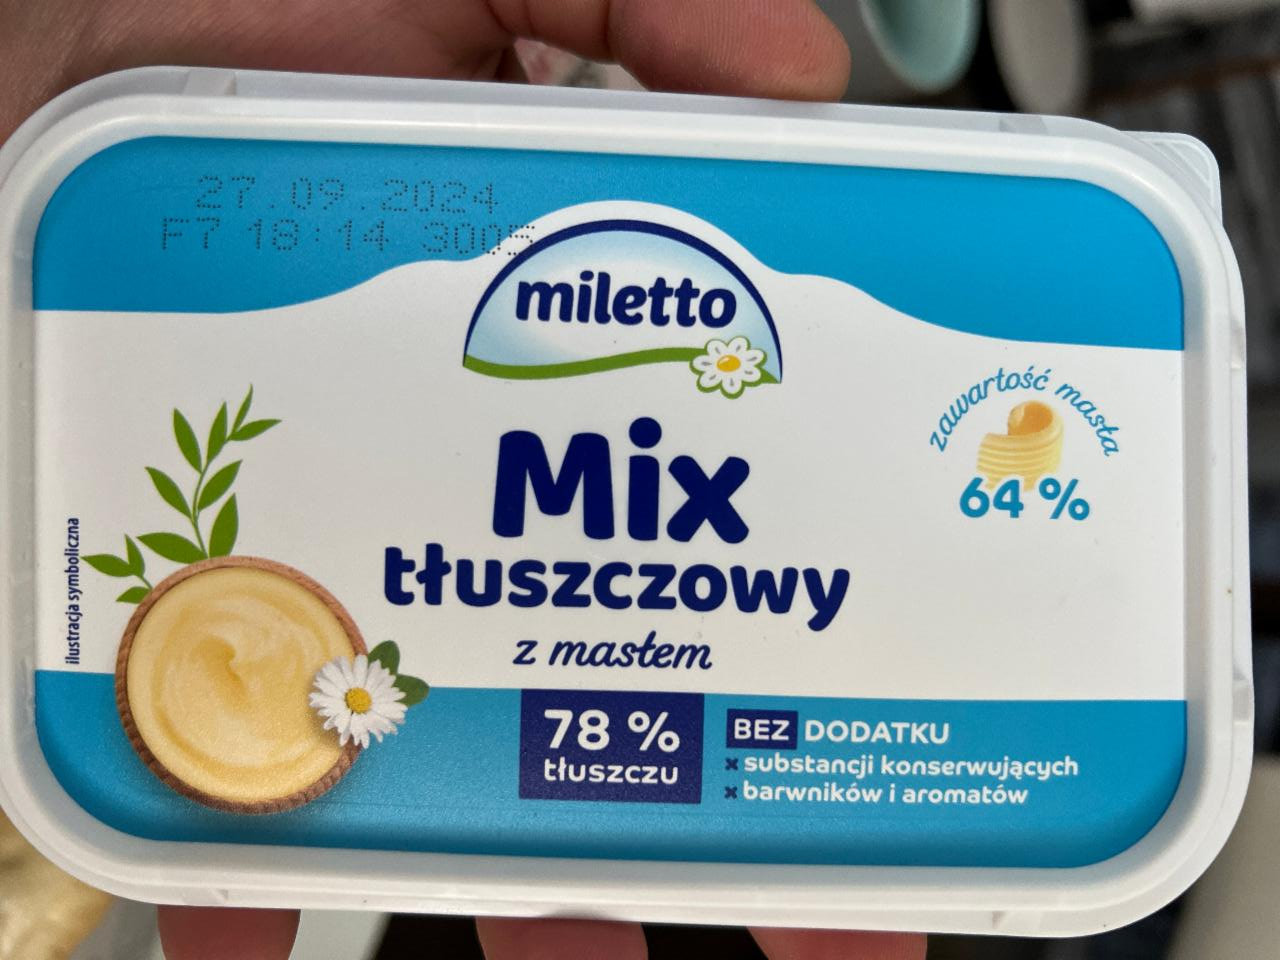 Fotografie - Mix tluszczowy z maslem 78% tluszczu Miletto